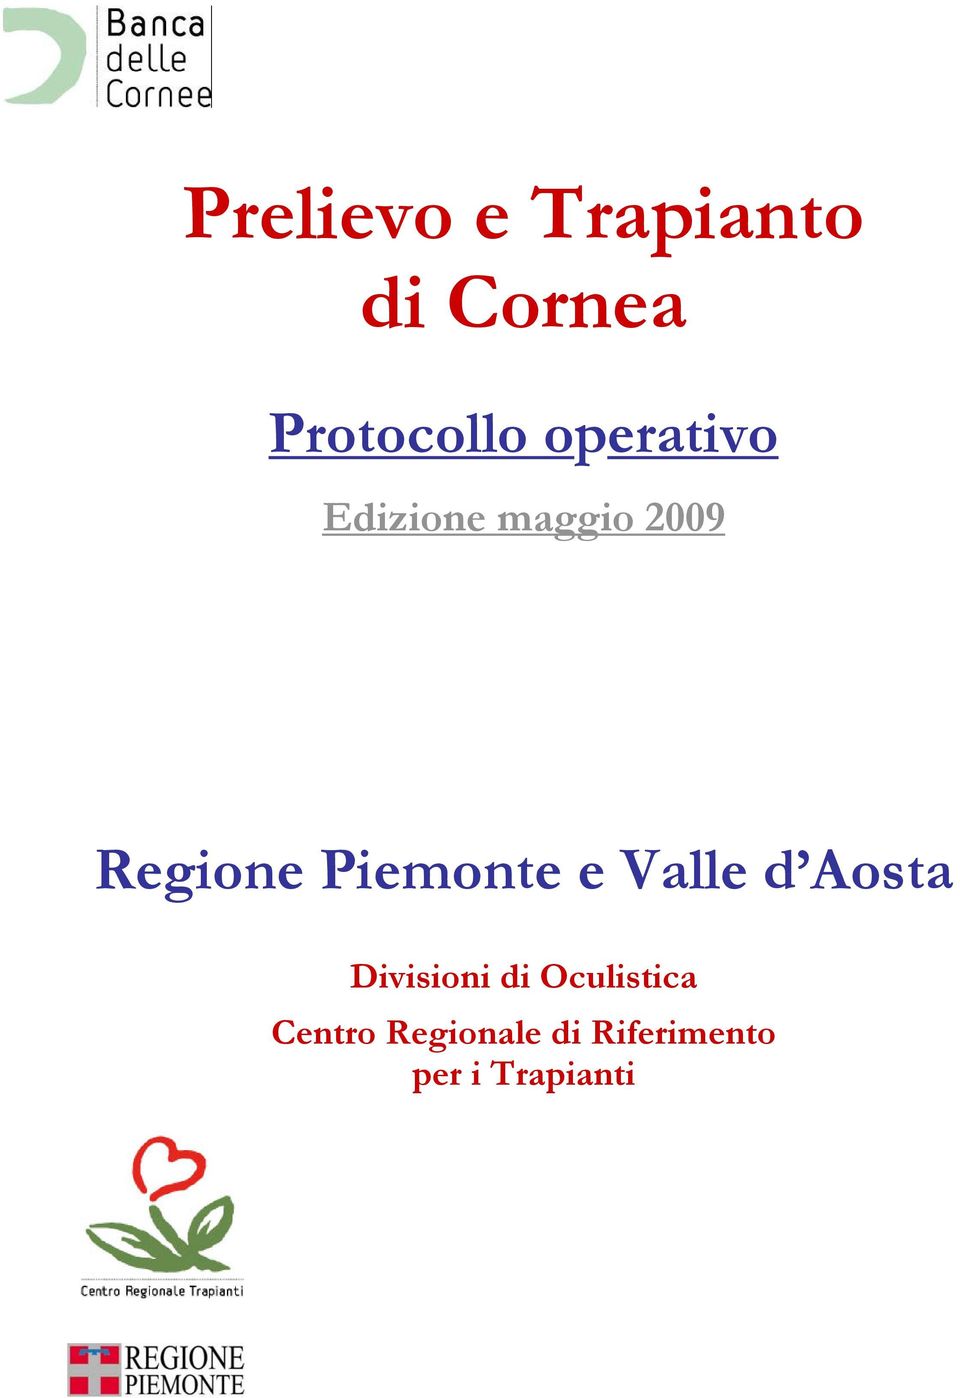 Piemonte e Valle d Aosta Divisioni di